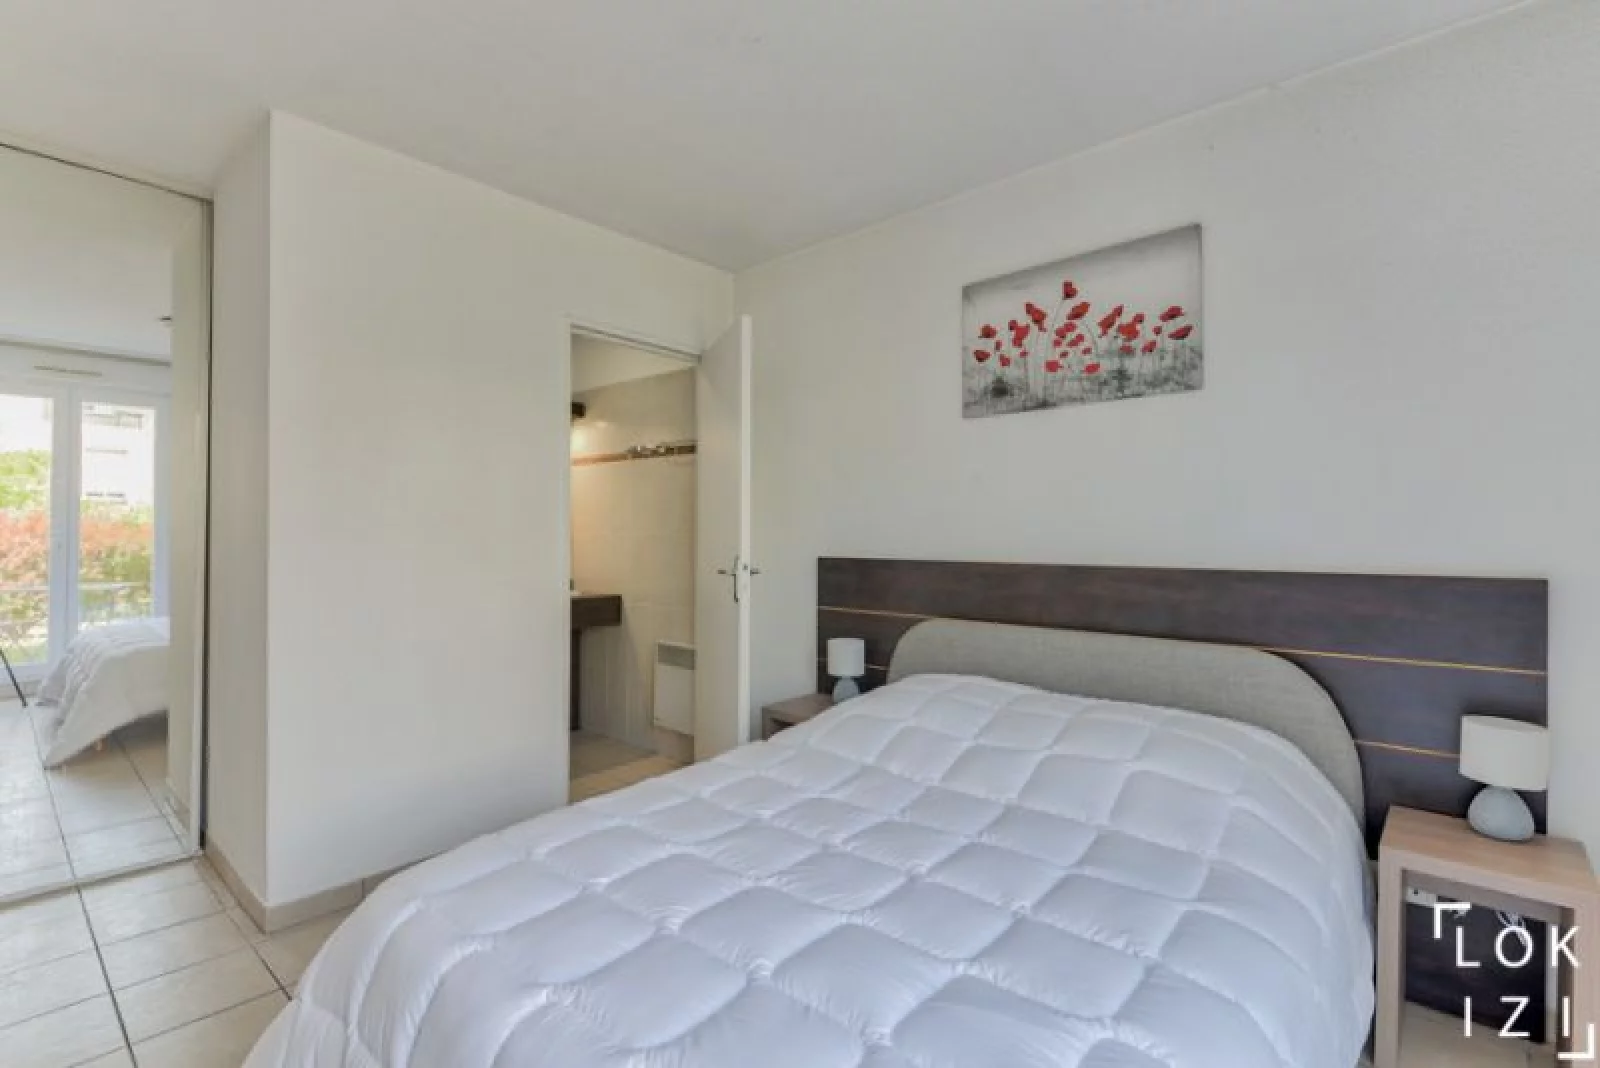 Location appartement meublé duplex 4 pièces 80m² (Paris est - Bry s/ Marne)